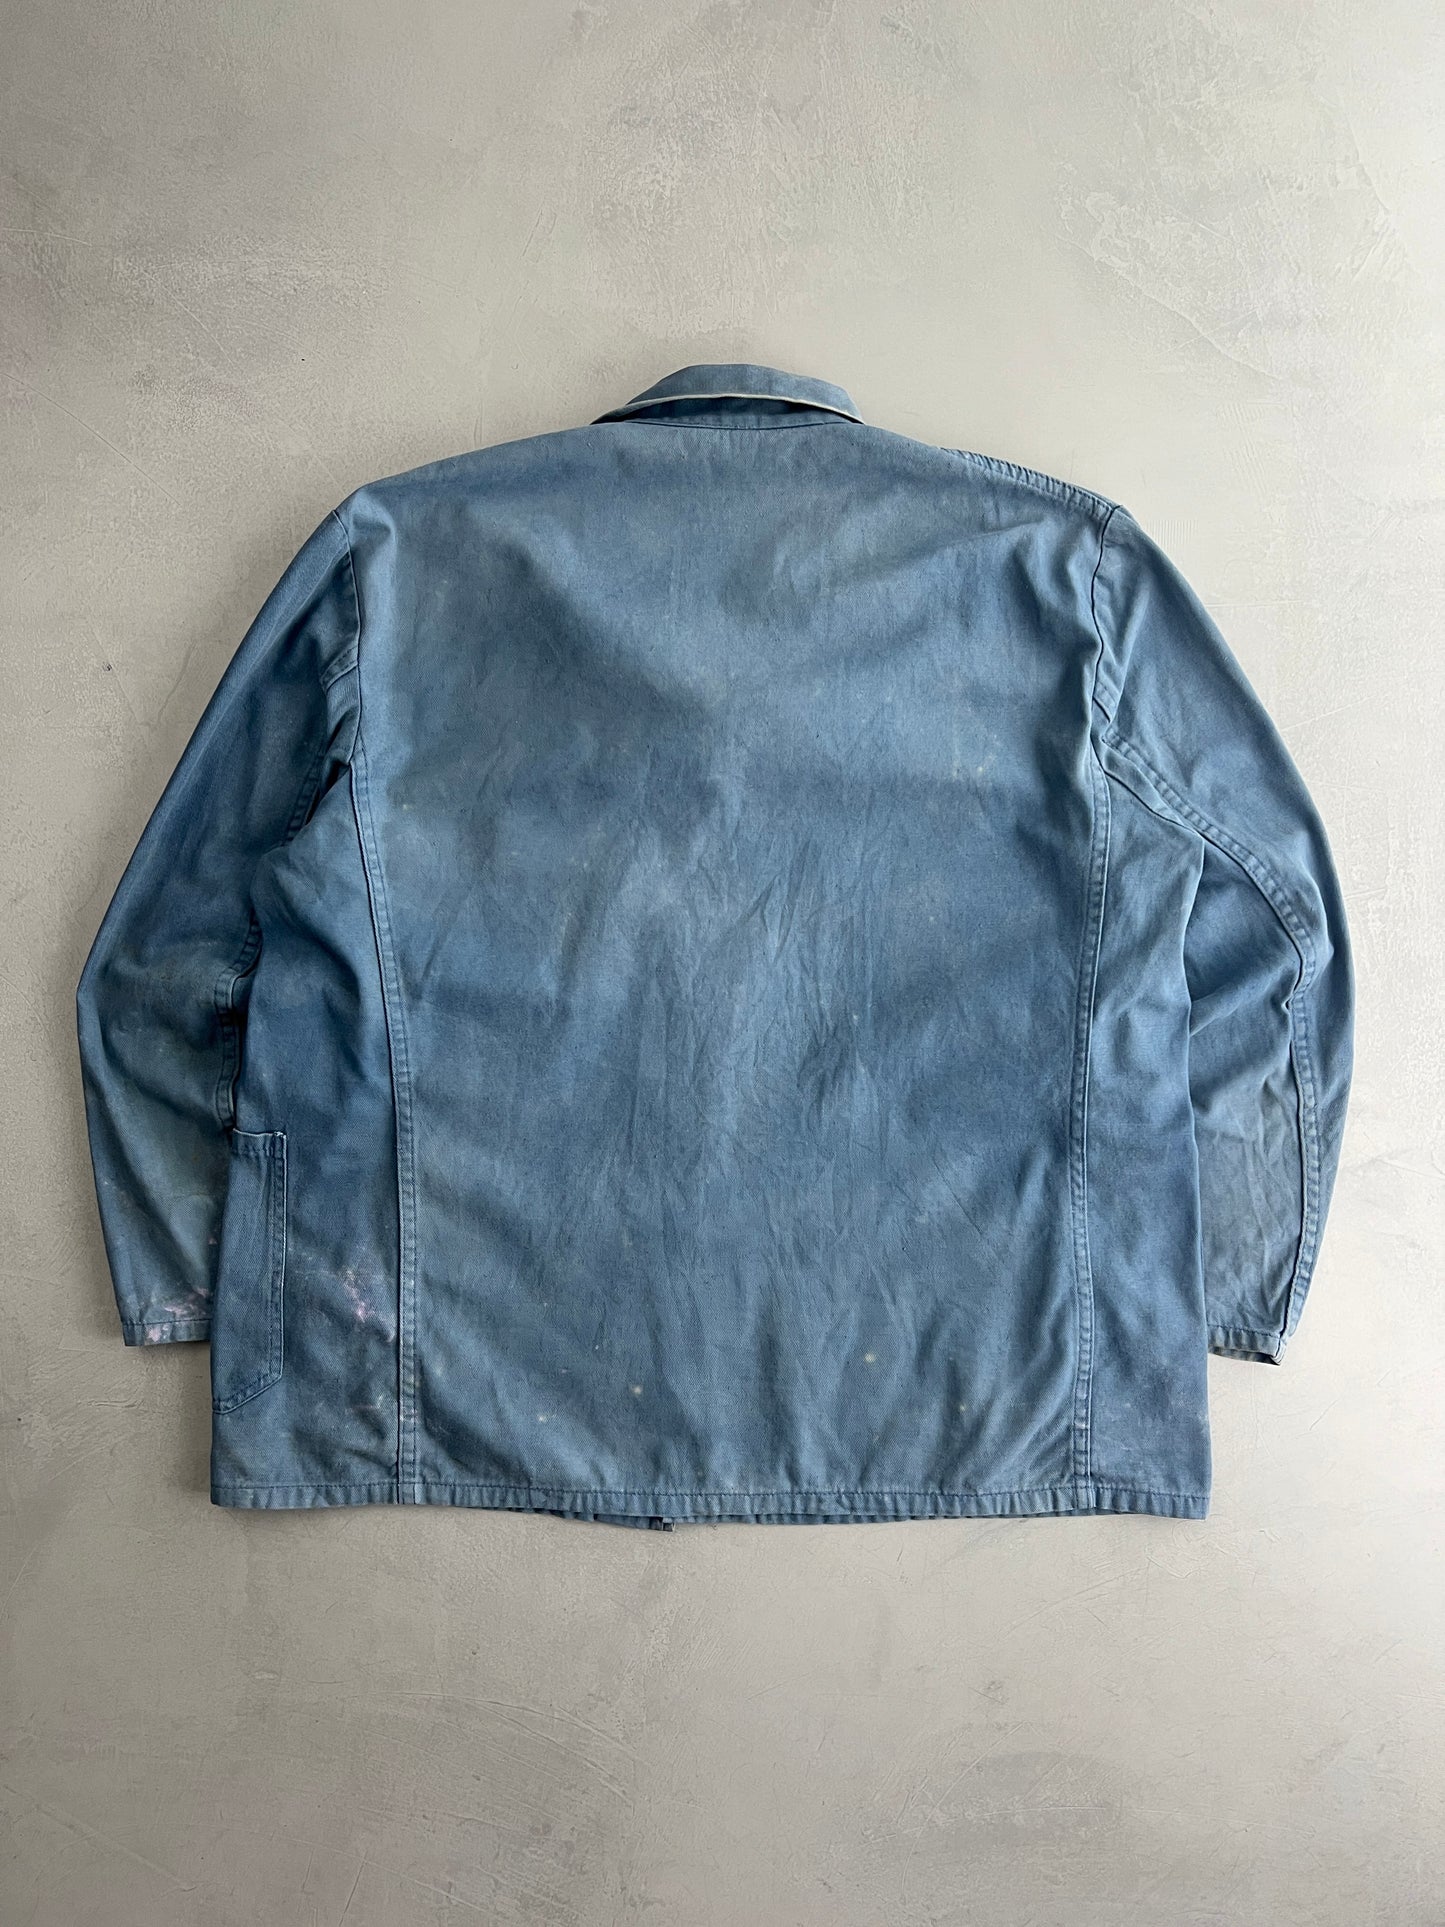 Faded Euro Chore Jacket [XL]